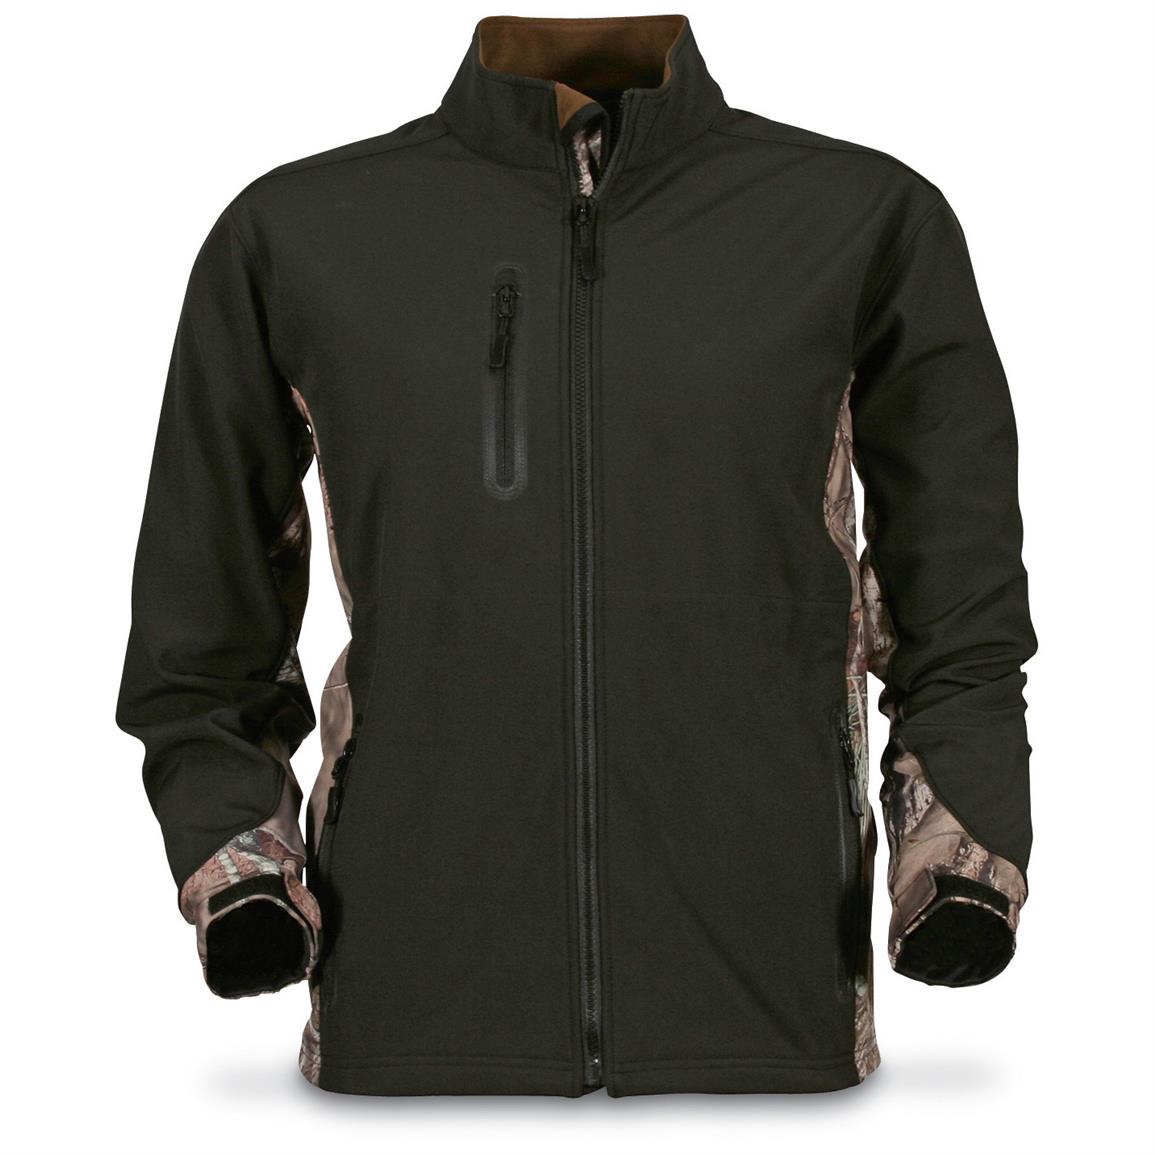 Day Break Men's Waterproof/Windproof Fleece Jacket 676143, Camo Jackets at Sportsman's Guide